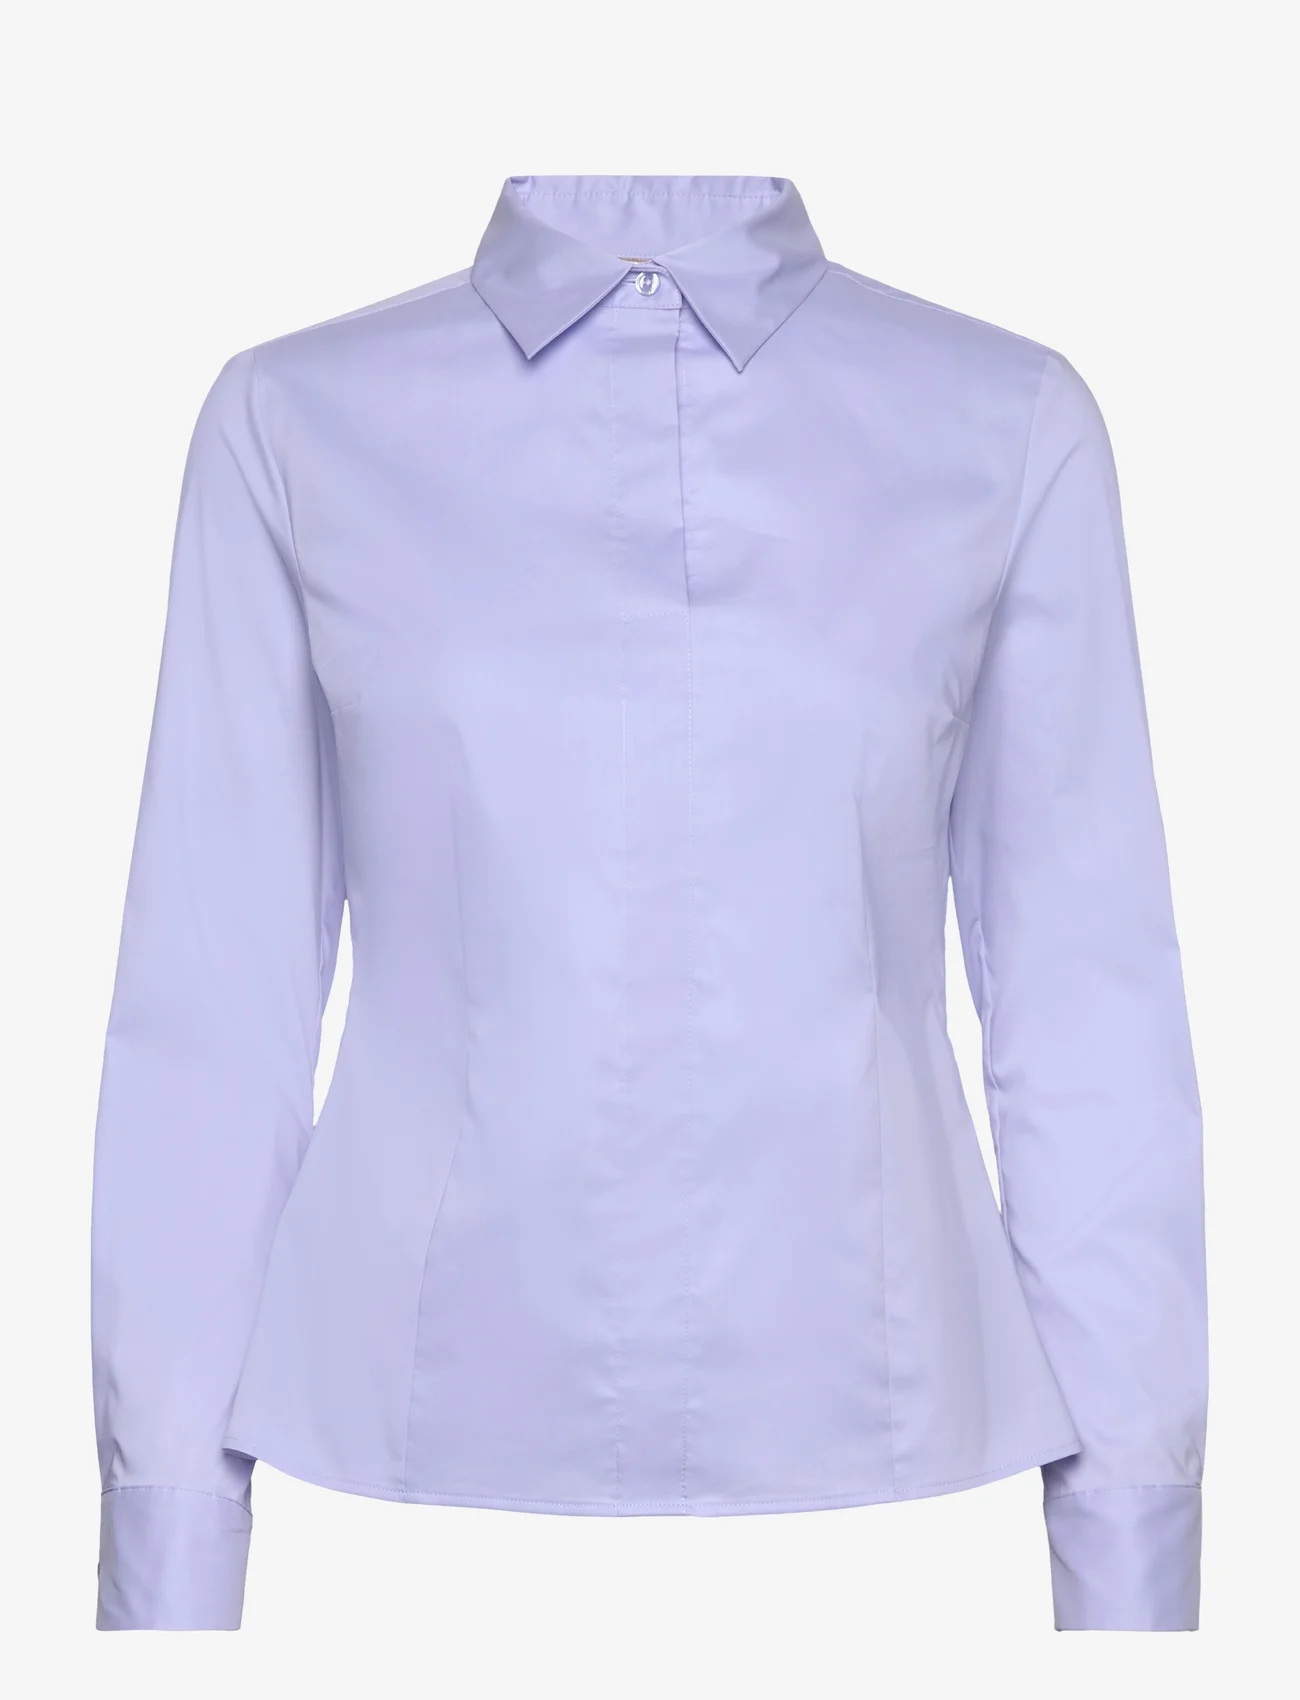 BOSS - Bashinah - langærmede skjorter - light/pastel blue - 0